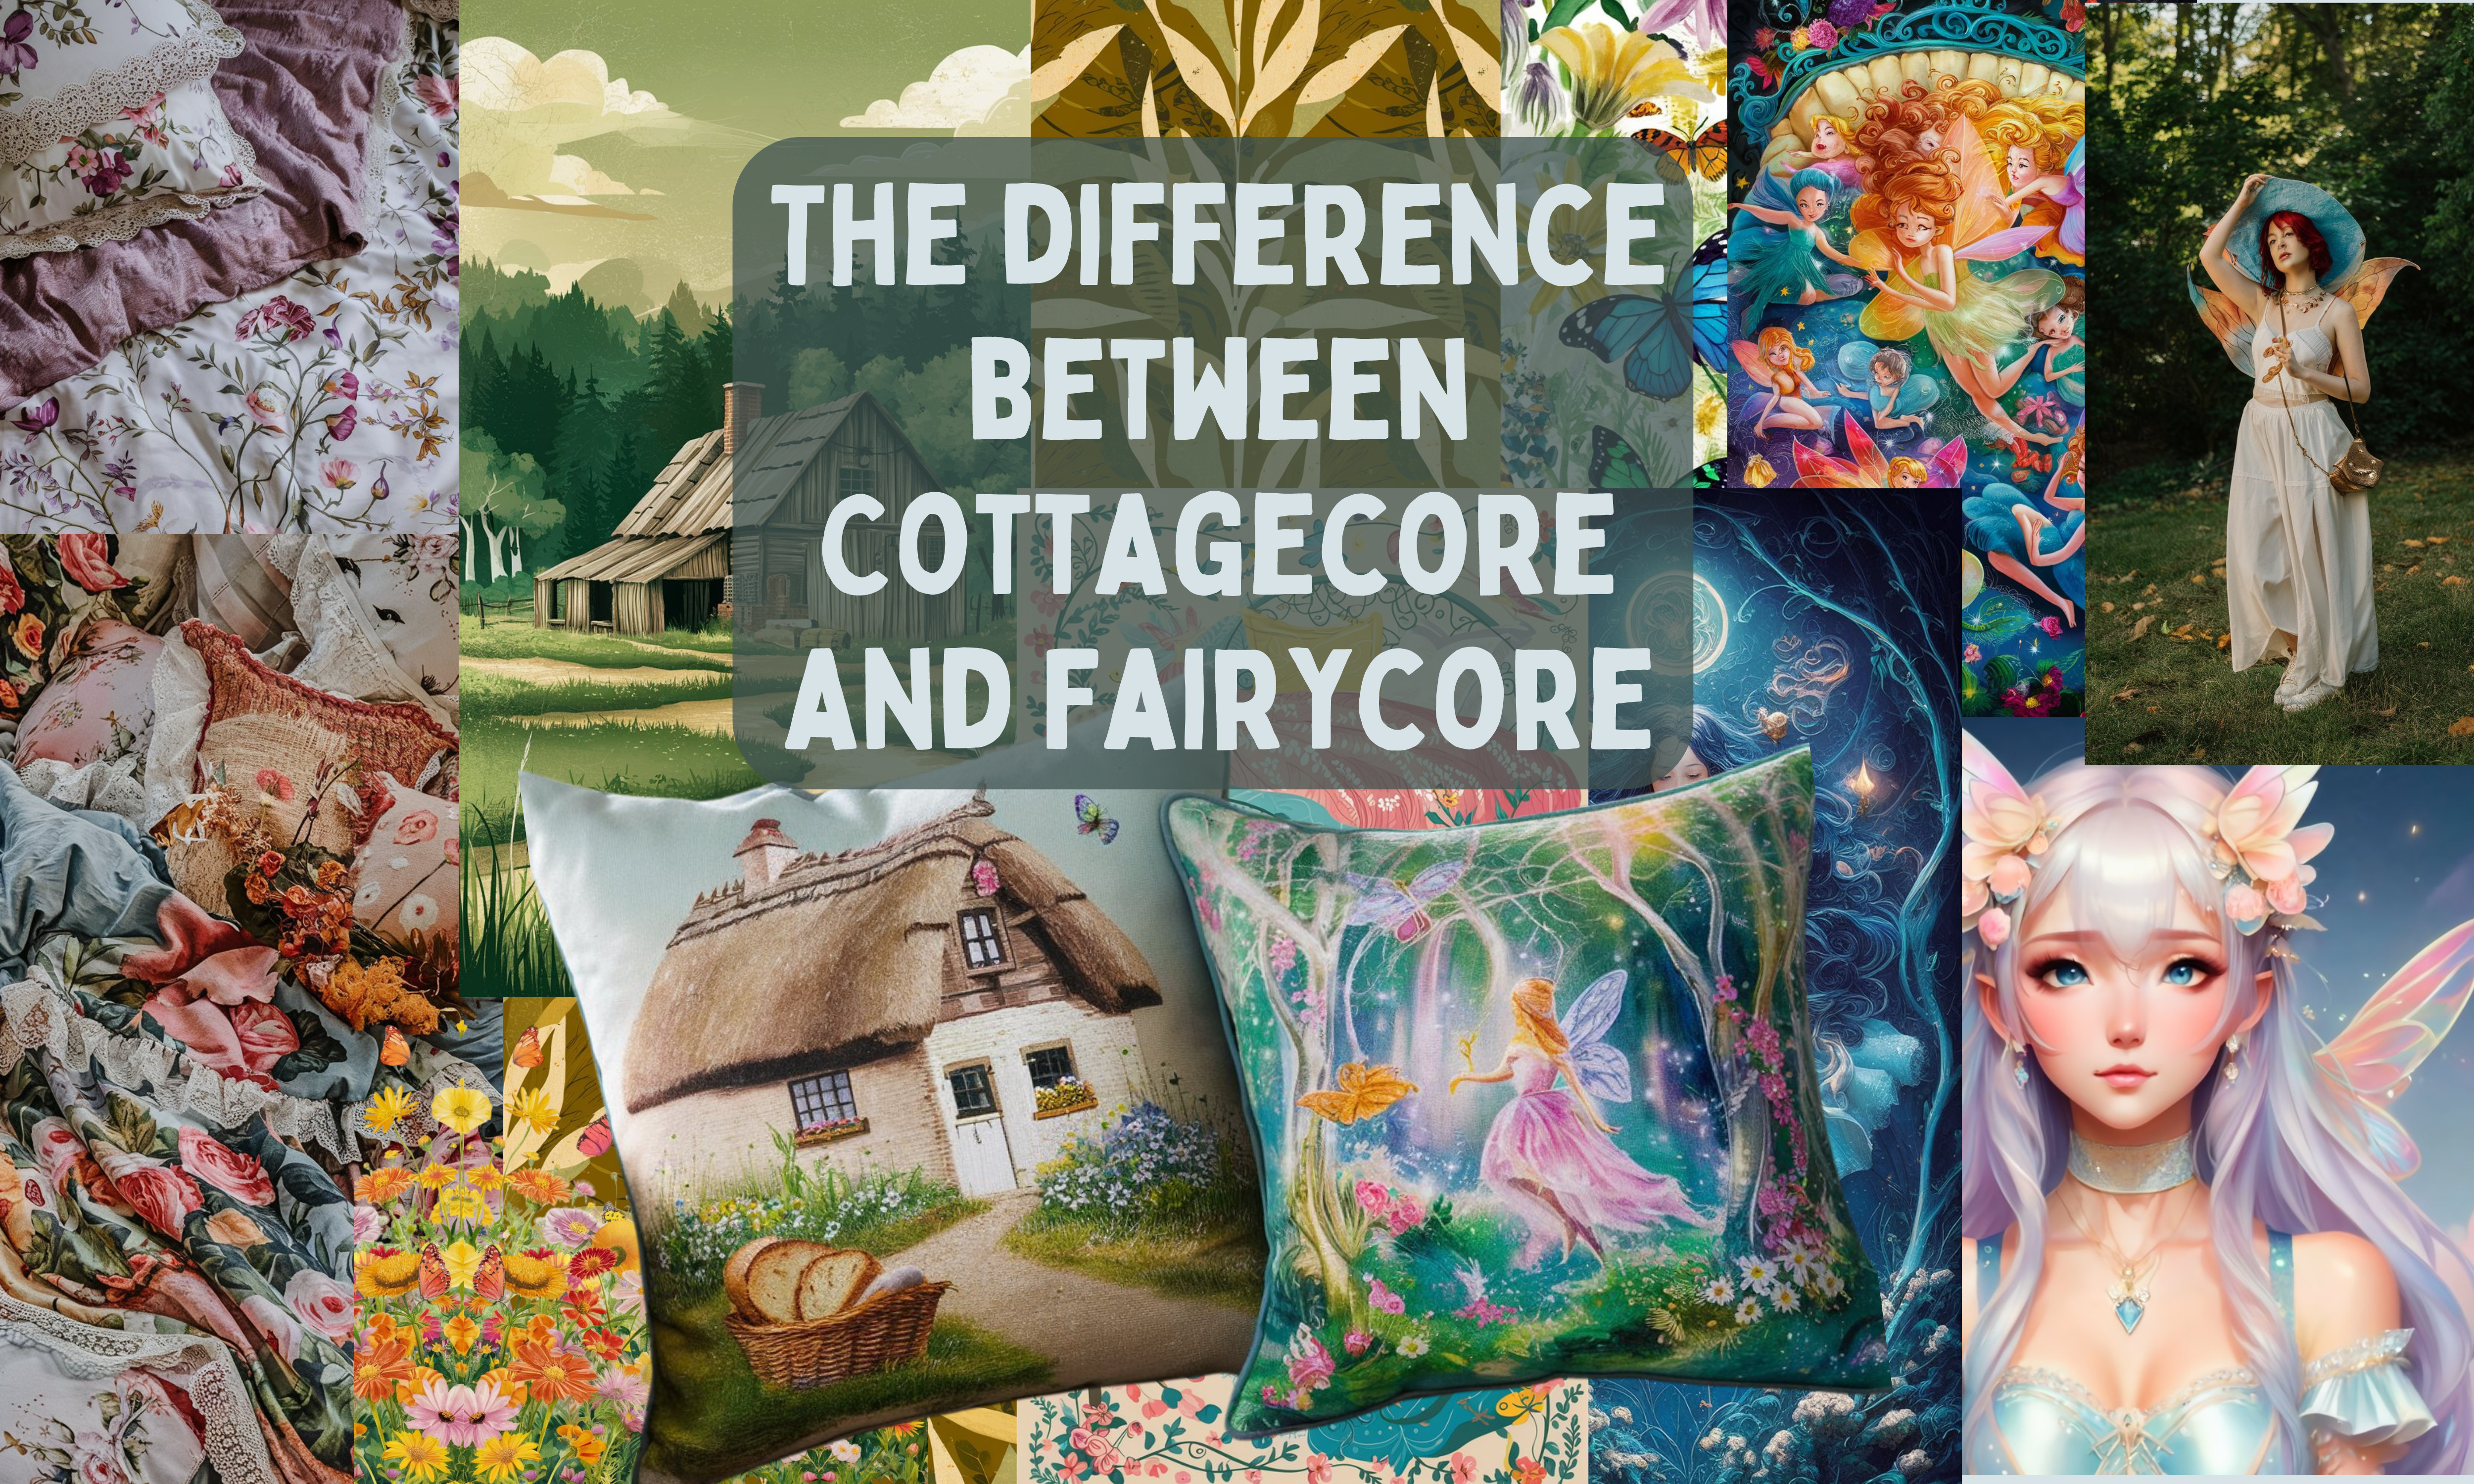 Cottagecore explained